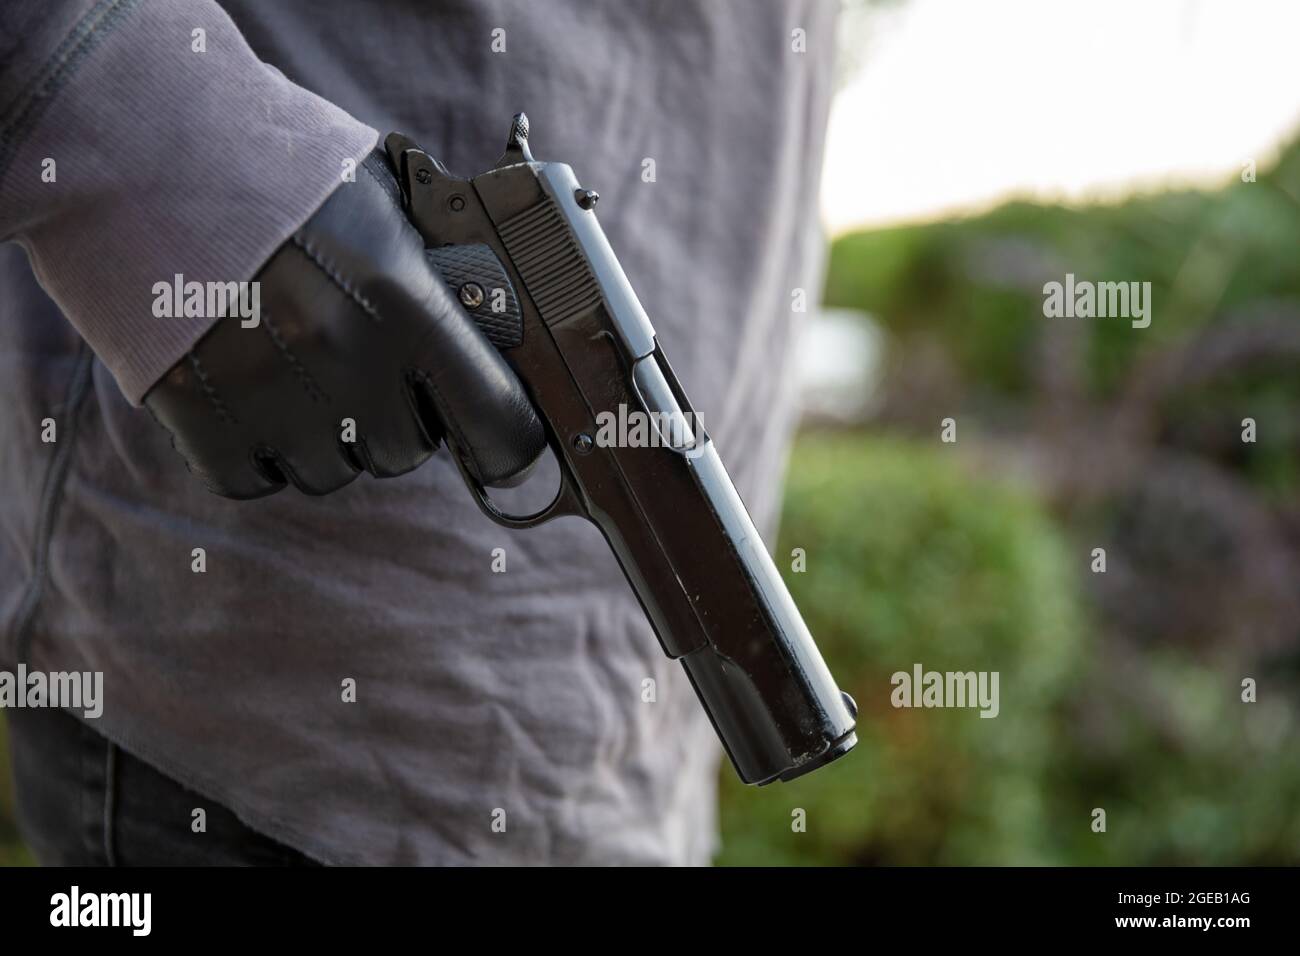 Homme armé en mouvement, tenant un pistolet dans sa main gantée, flou de fond de nature extérieure. Concept de menace, de violence et de danger Banque D'Images